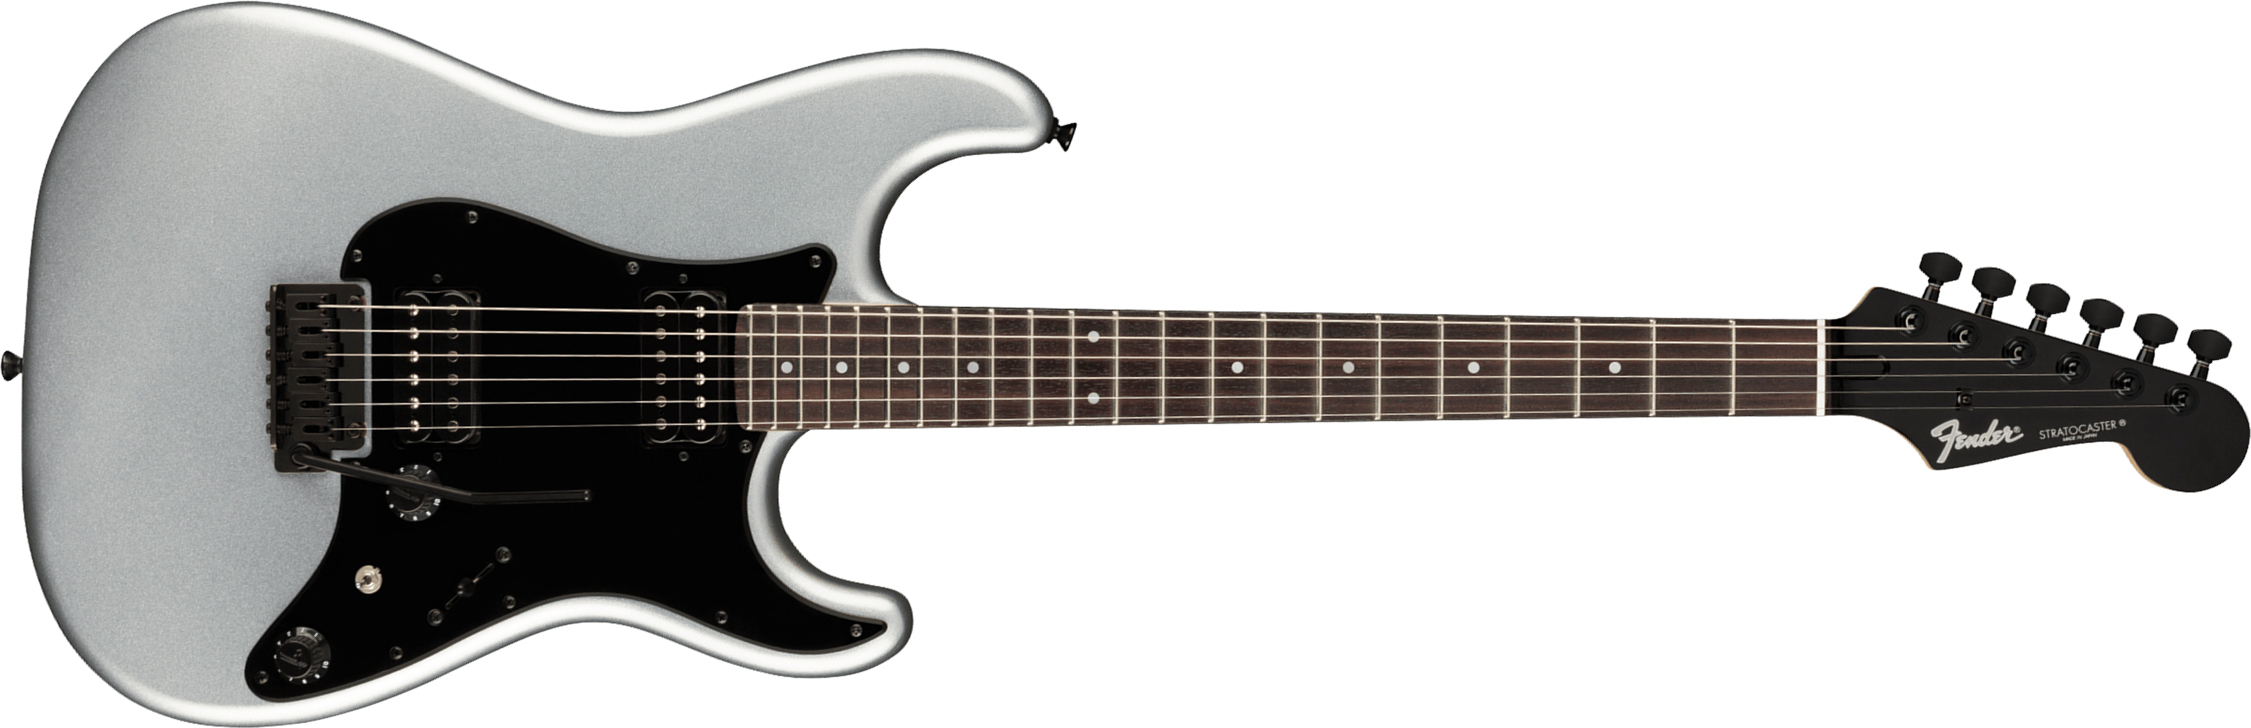 Fender Strat Boxer Hh Jap Trem Rw +housse - Inca Silver - E-Gitarre in Str-Form - Main picture